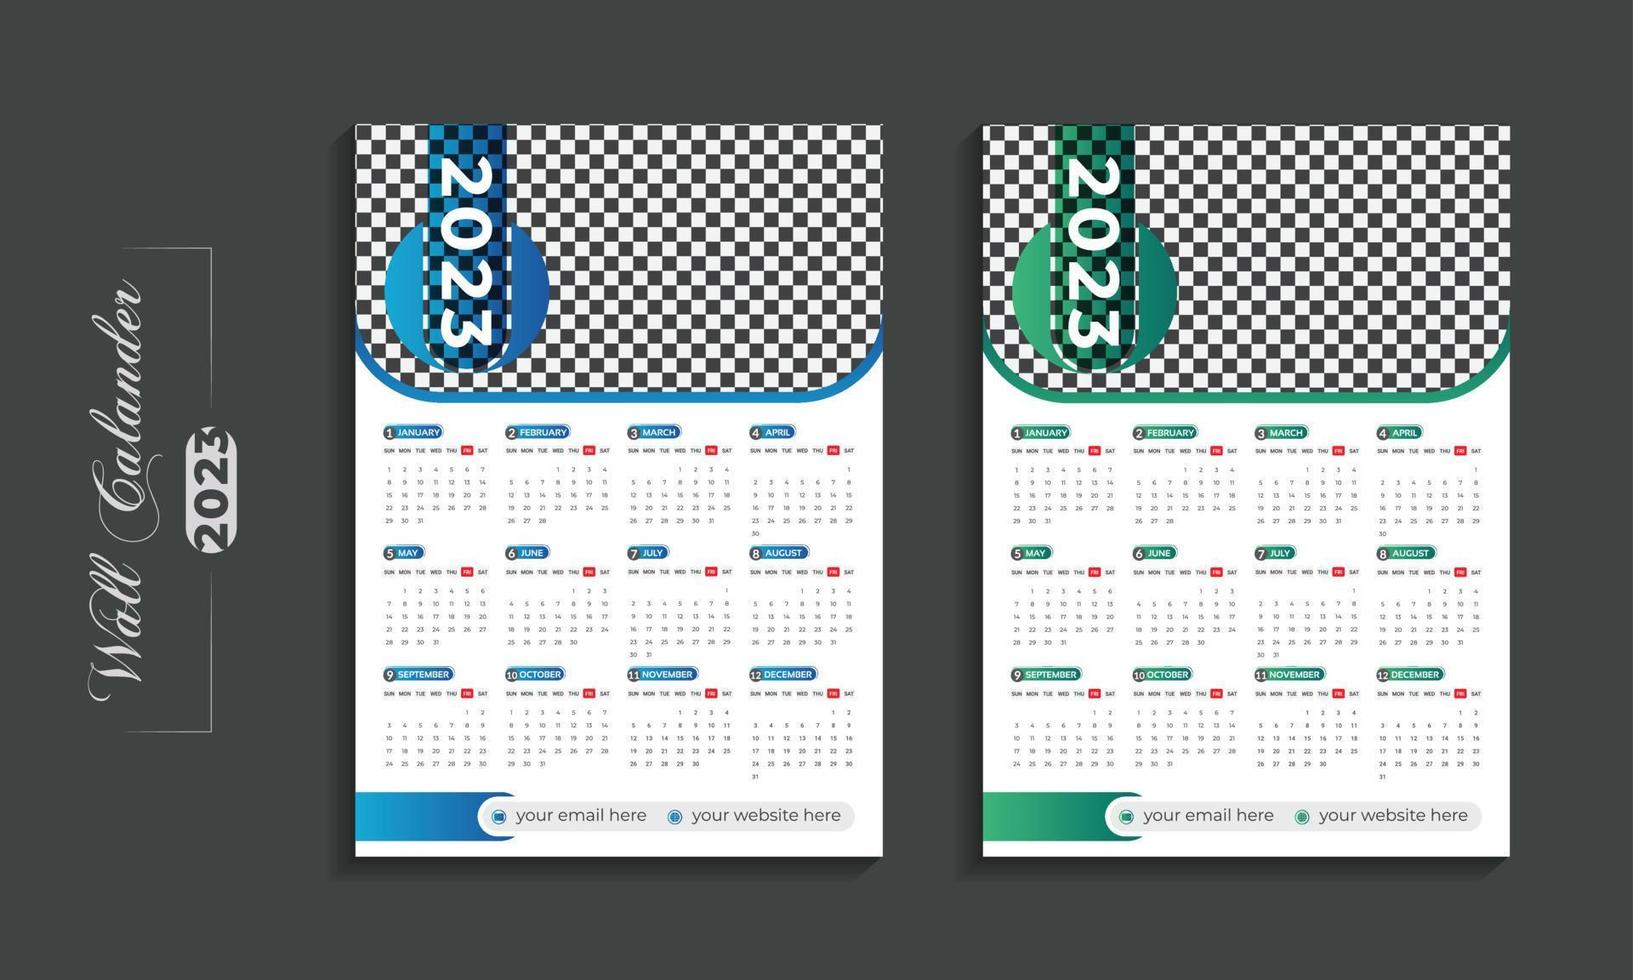 2023 moderne Wandkalender-Designvorlage für das neue Jahr vektor